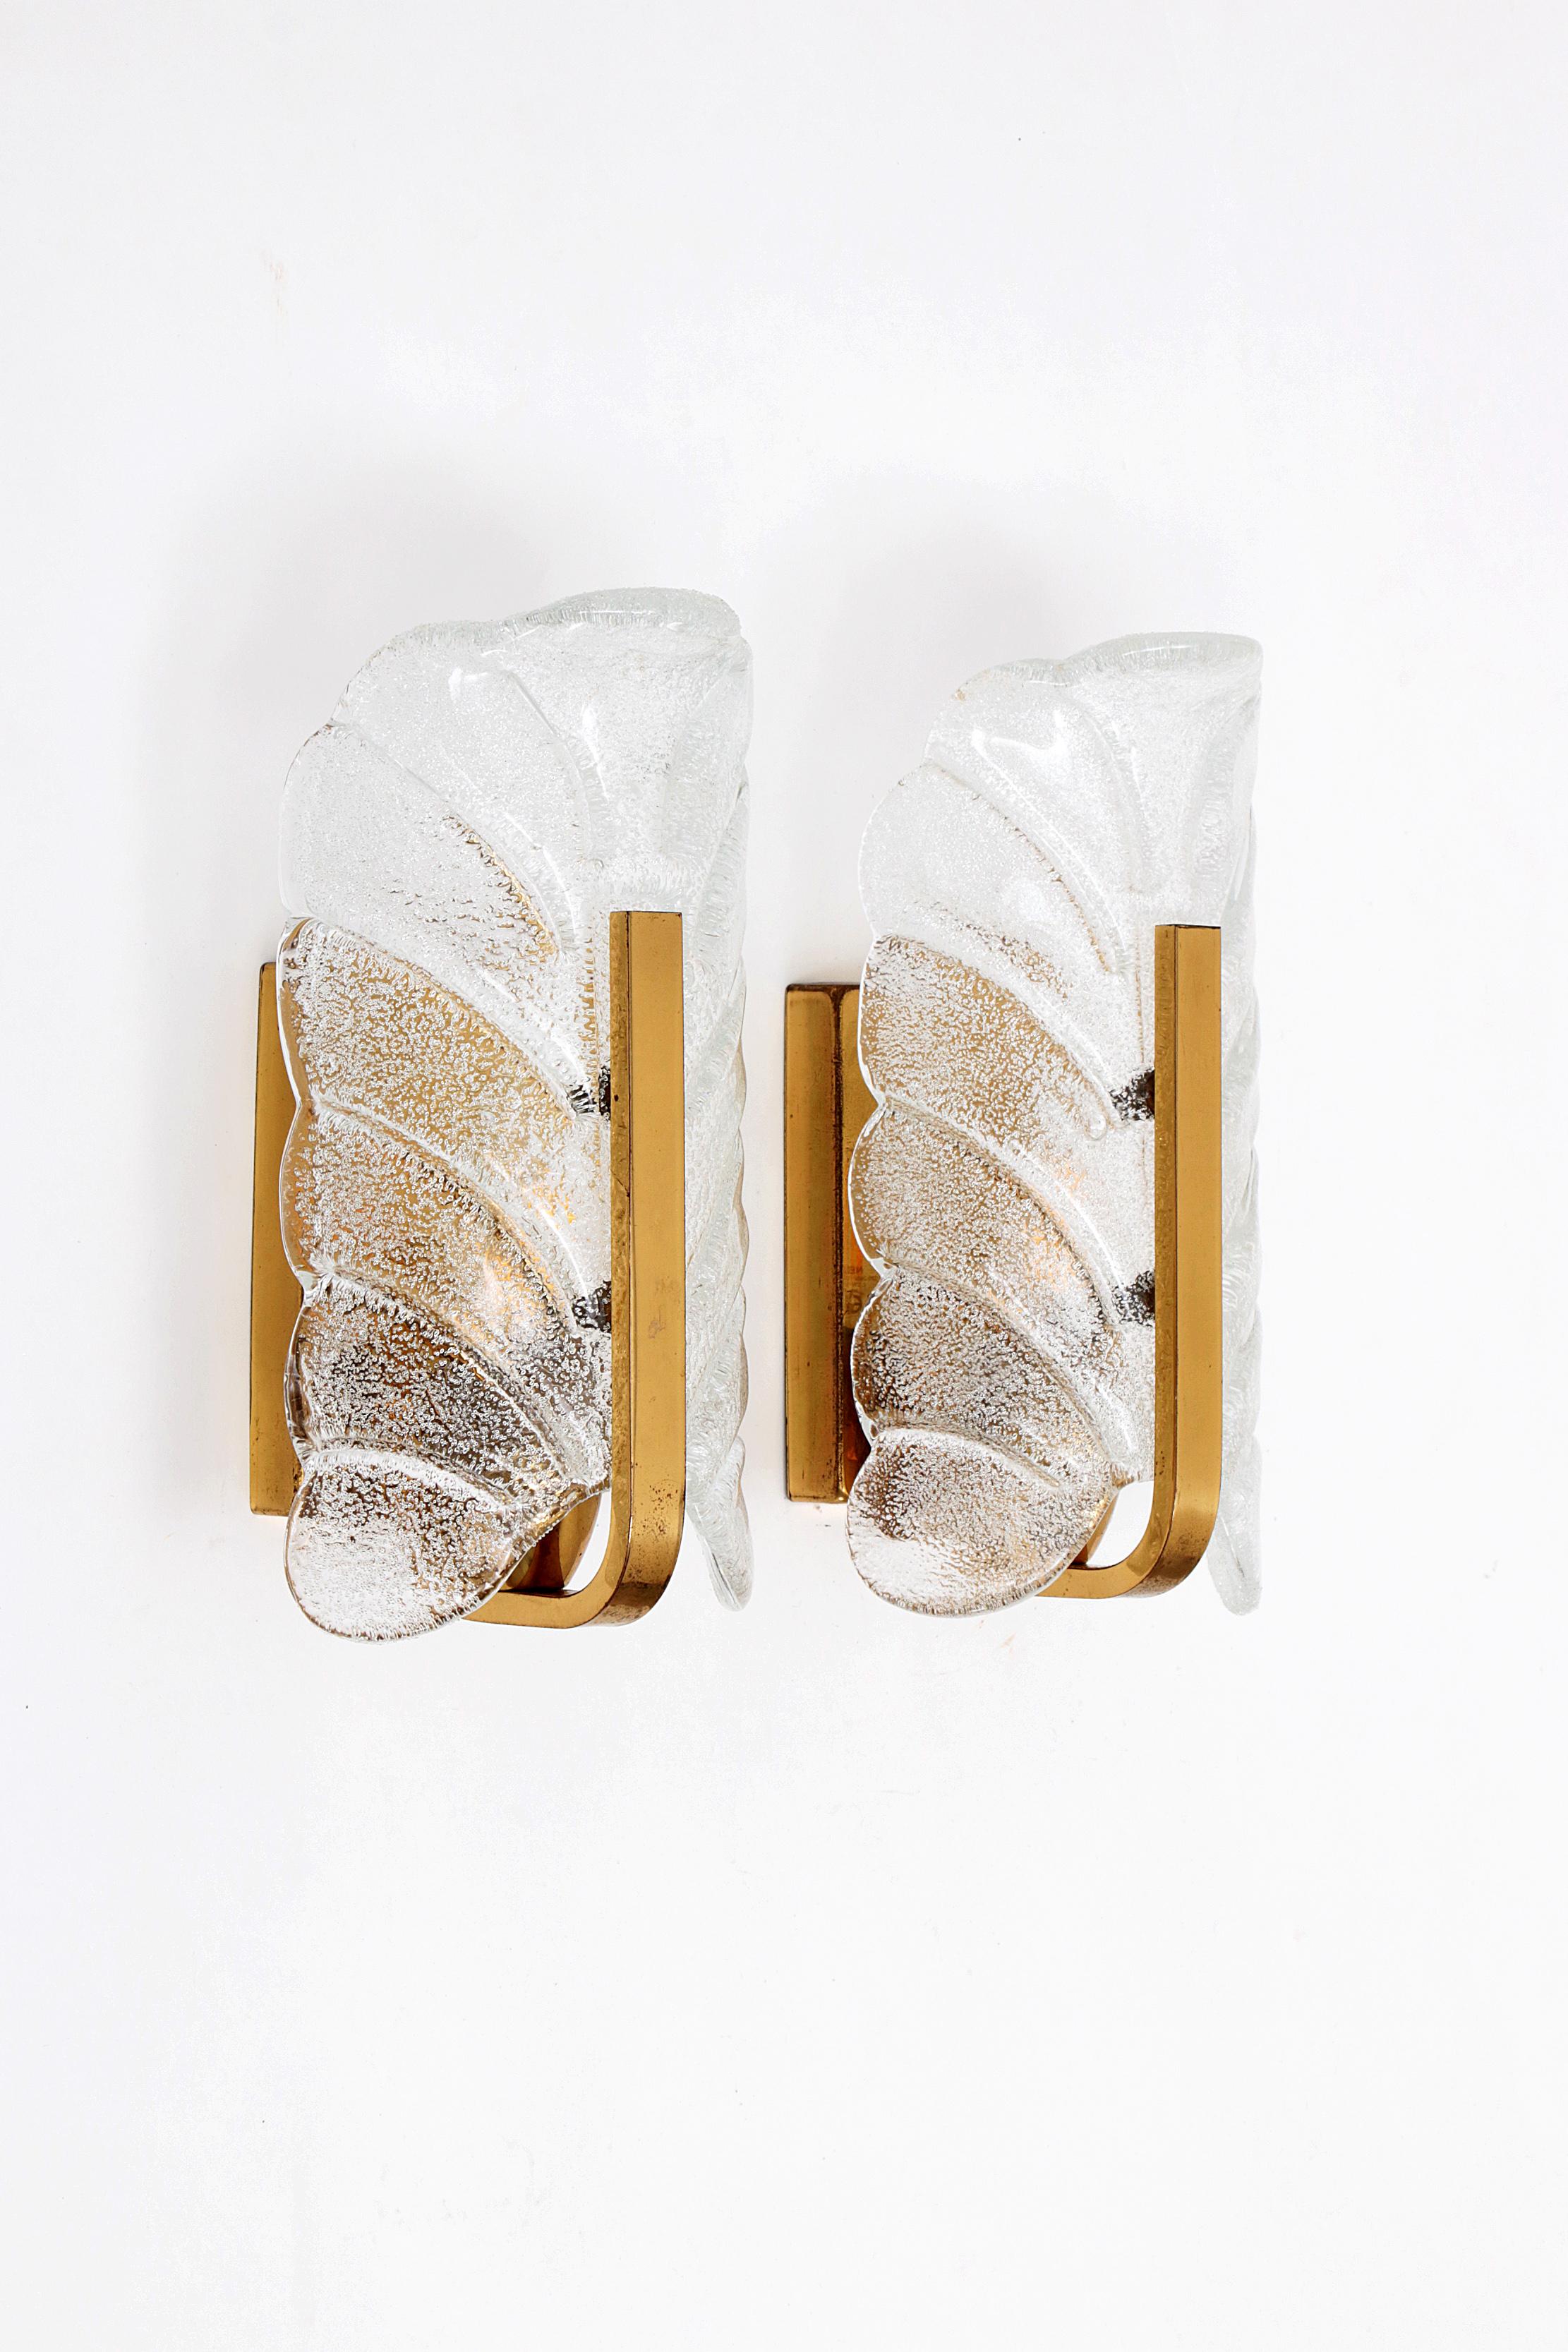 Ein Paar skandinavische Wandlampen/Kerzenhalter aus Glas von Carl Fagerlund für Orrefors (1960er Jahre). Schirm aus klarem Glas, der ein Blatt darstellt (innen matt geprägt und außen glänzend), auf poliertem Messing. Verbreitet das Licht wunderbar